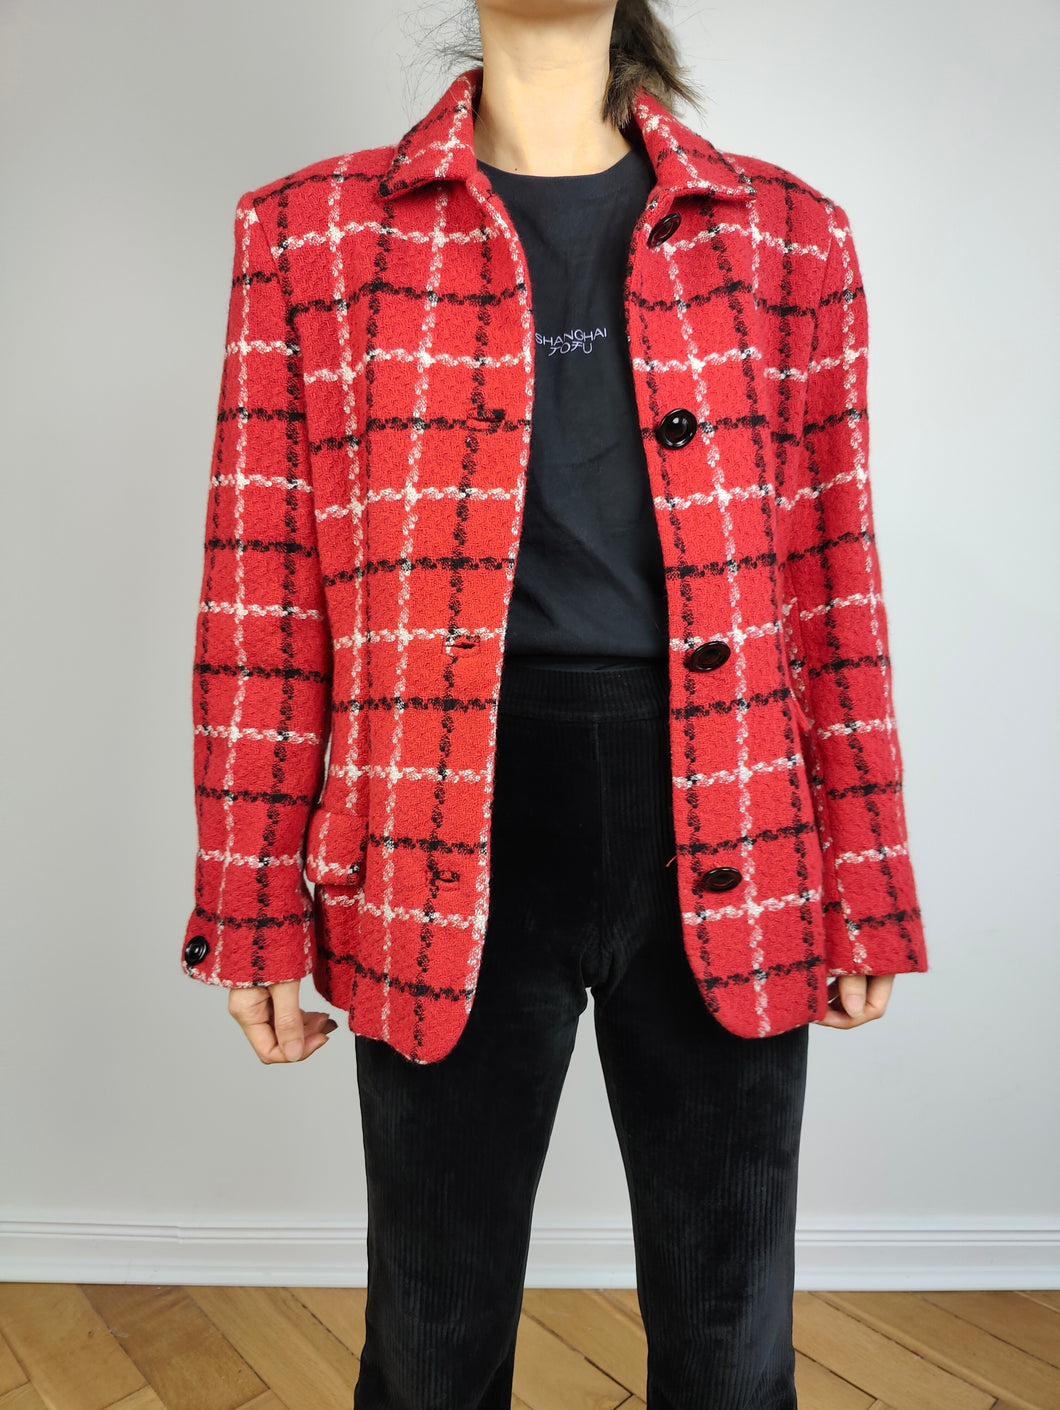 Der karierte Blazer aus roter Wolle | Vintage-Jacke aus Wollmischung, rot, schwarz, weiß, Schottenkaro, karierter Tweed-Look, Italien, S